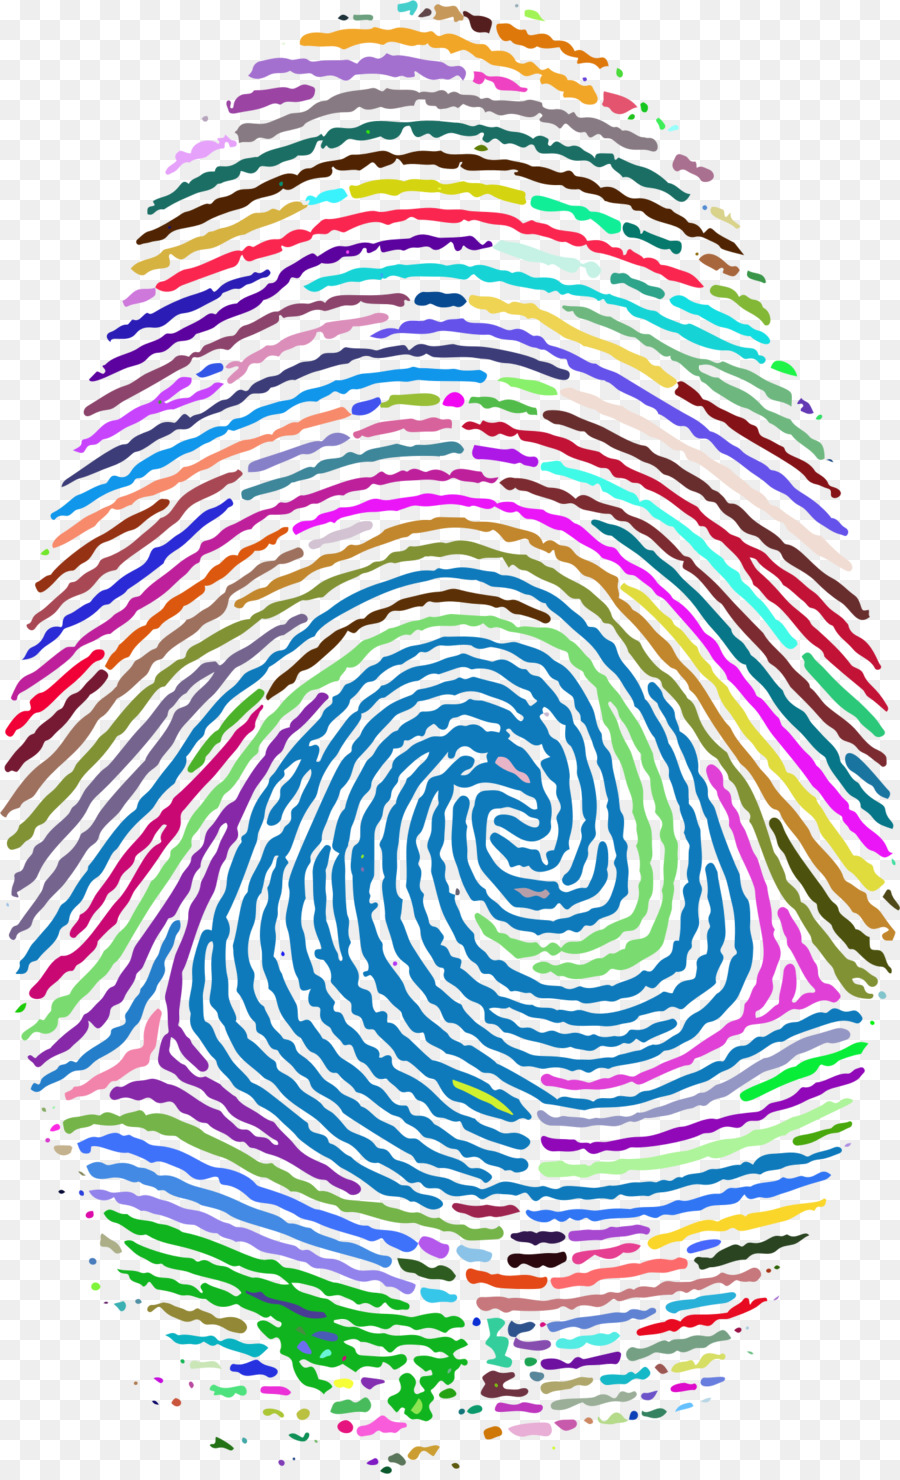 Fingerprint Footprint Clip art - finger print png download - 1406*2302 - Free Transparent Fingerprint png Download.